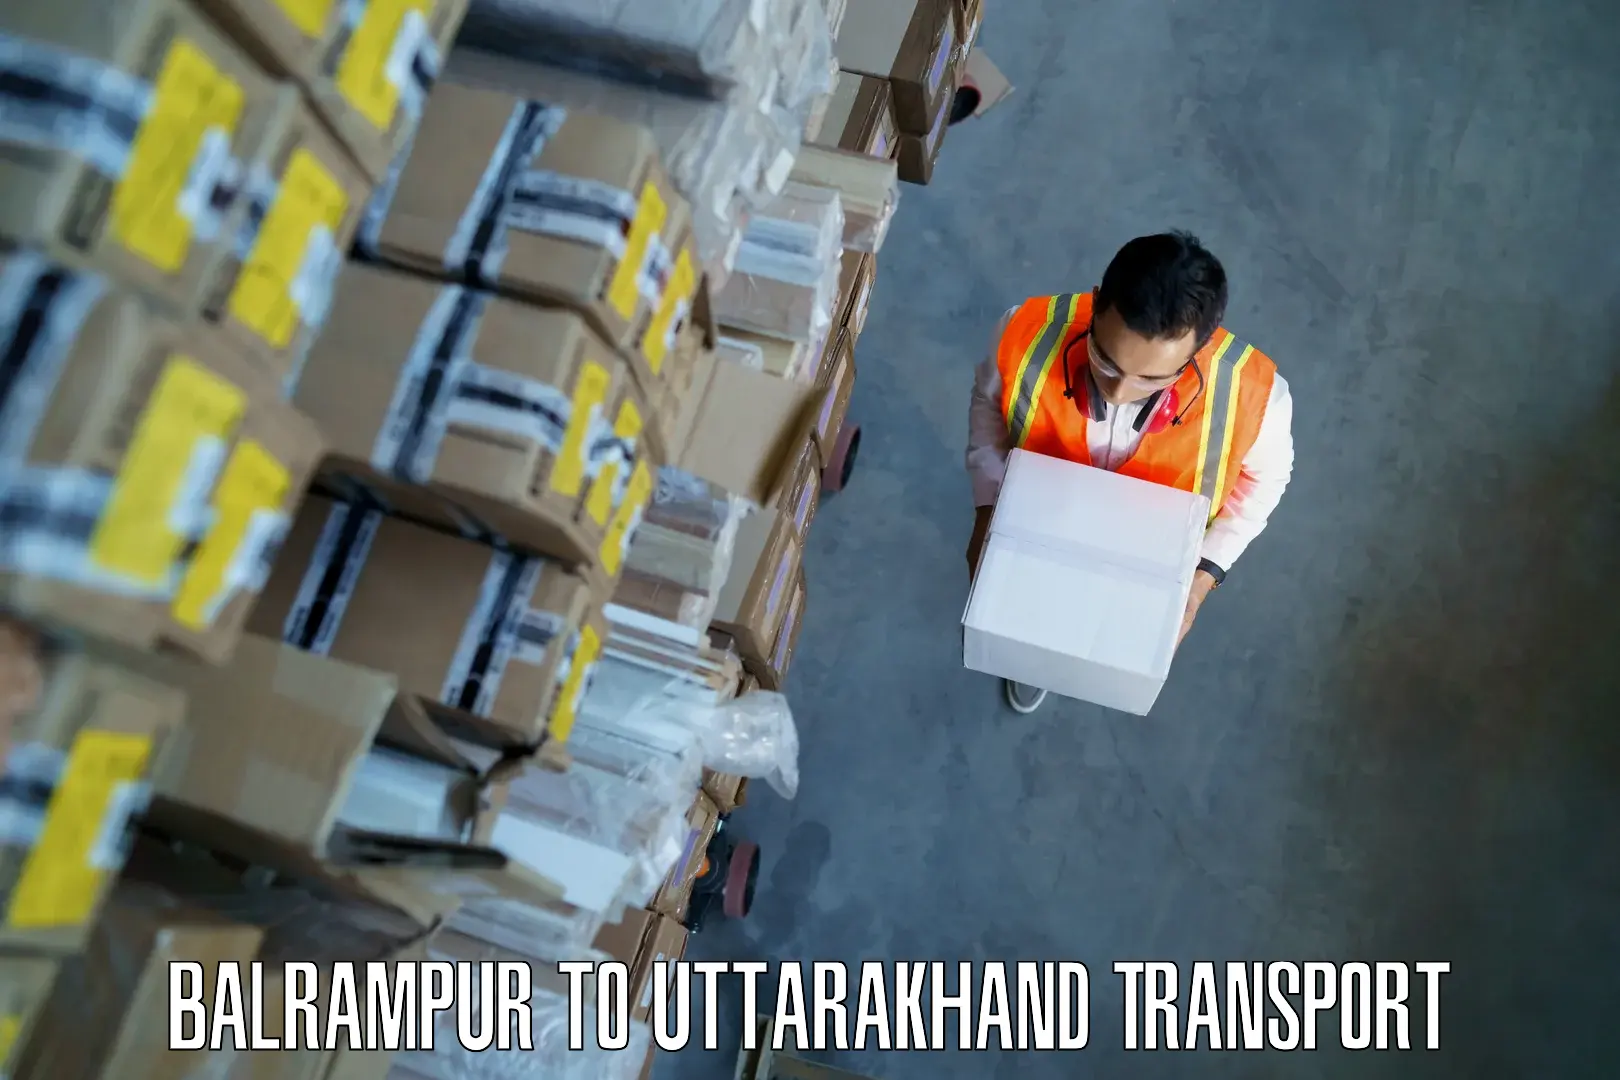 Transport in sharing Balrampur to Sitarganj